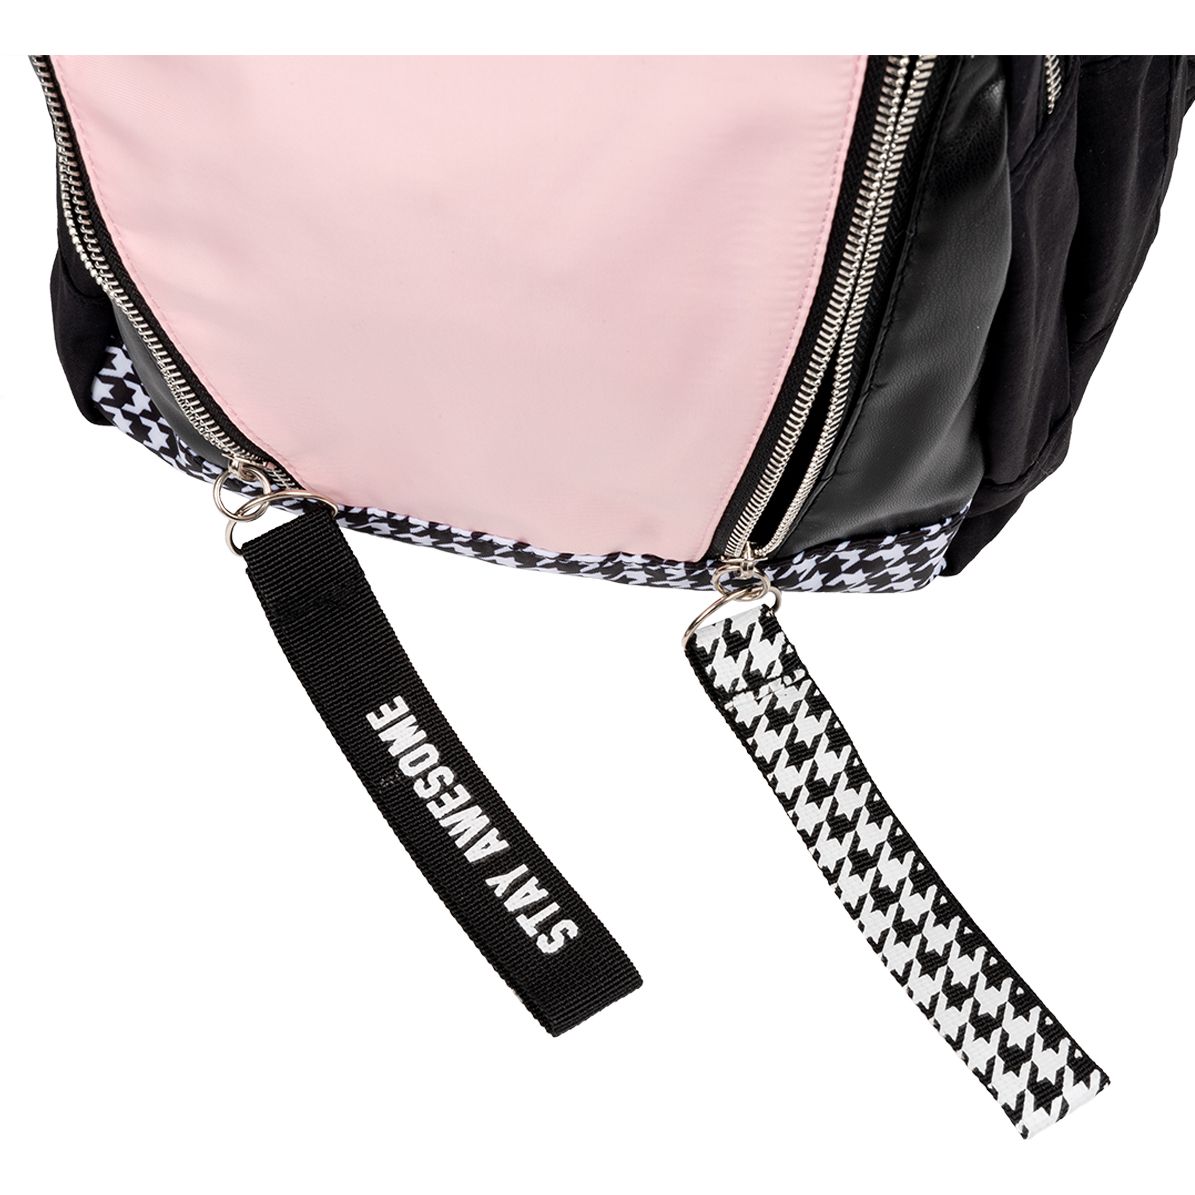 Рюкзак Yes TS-40 Stay Awesome, черный с розовым (558918) - фото 10